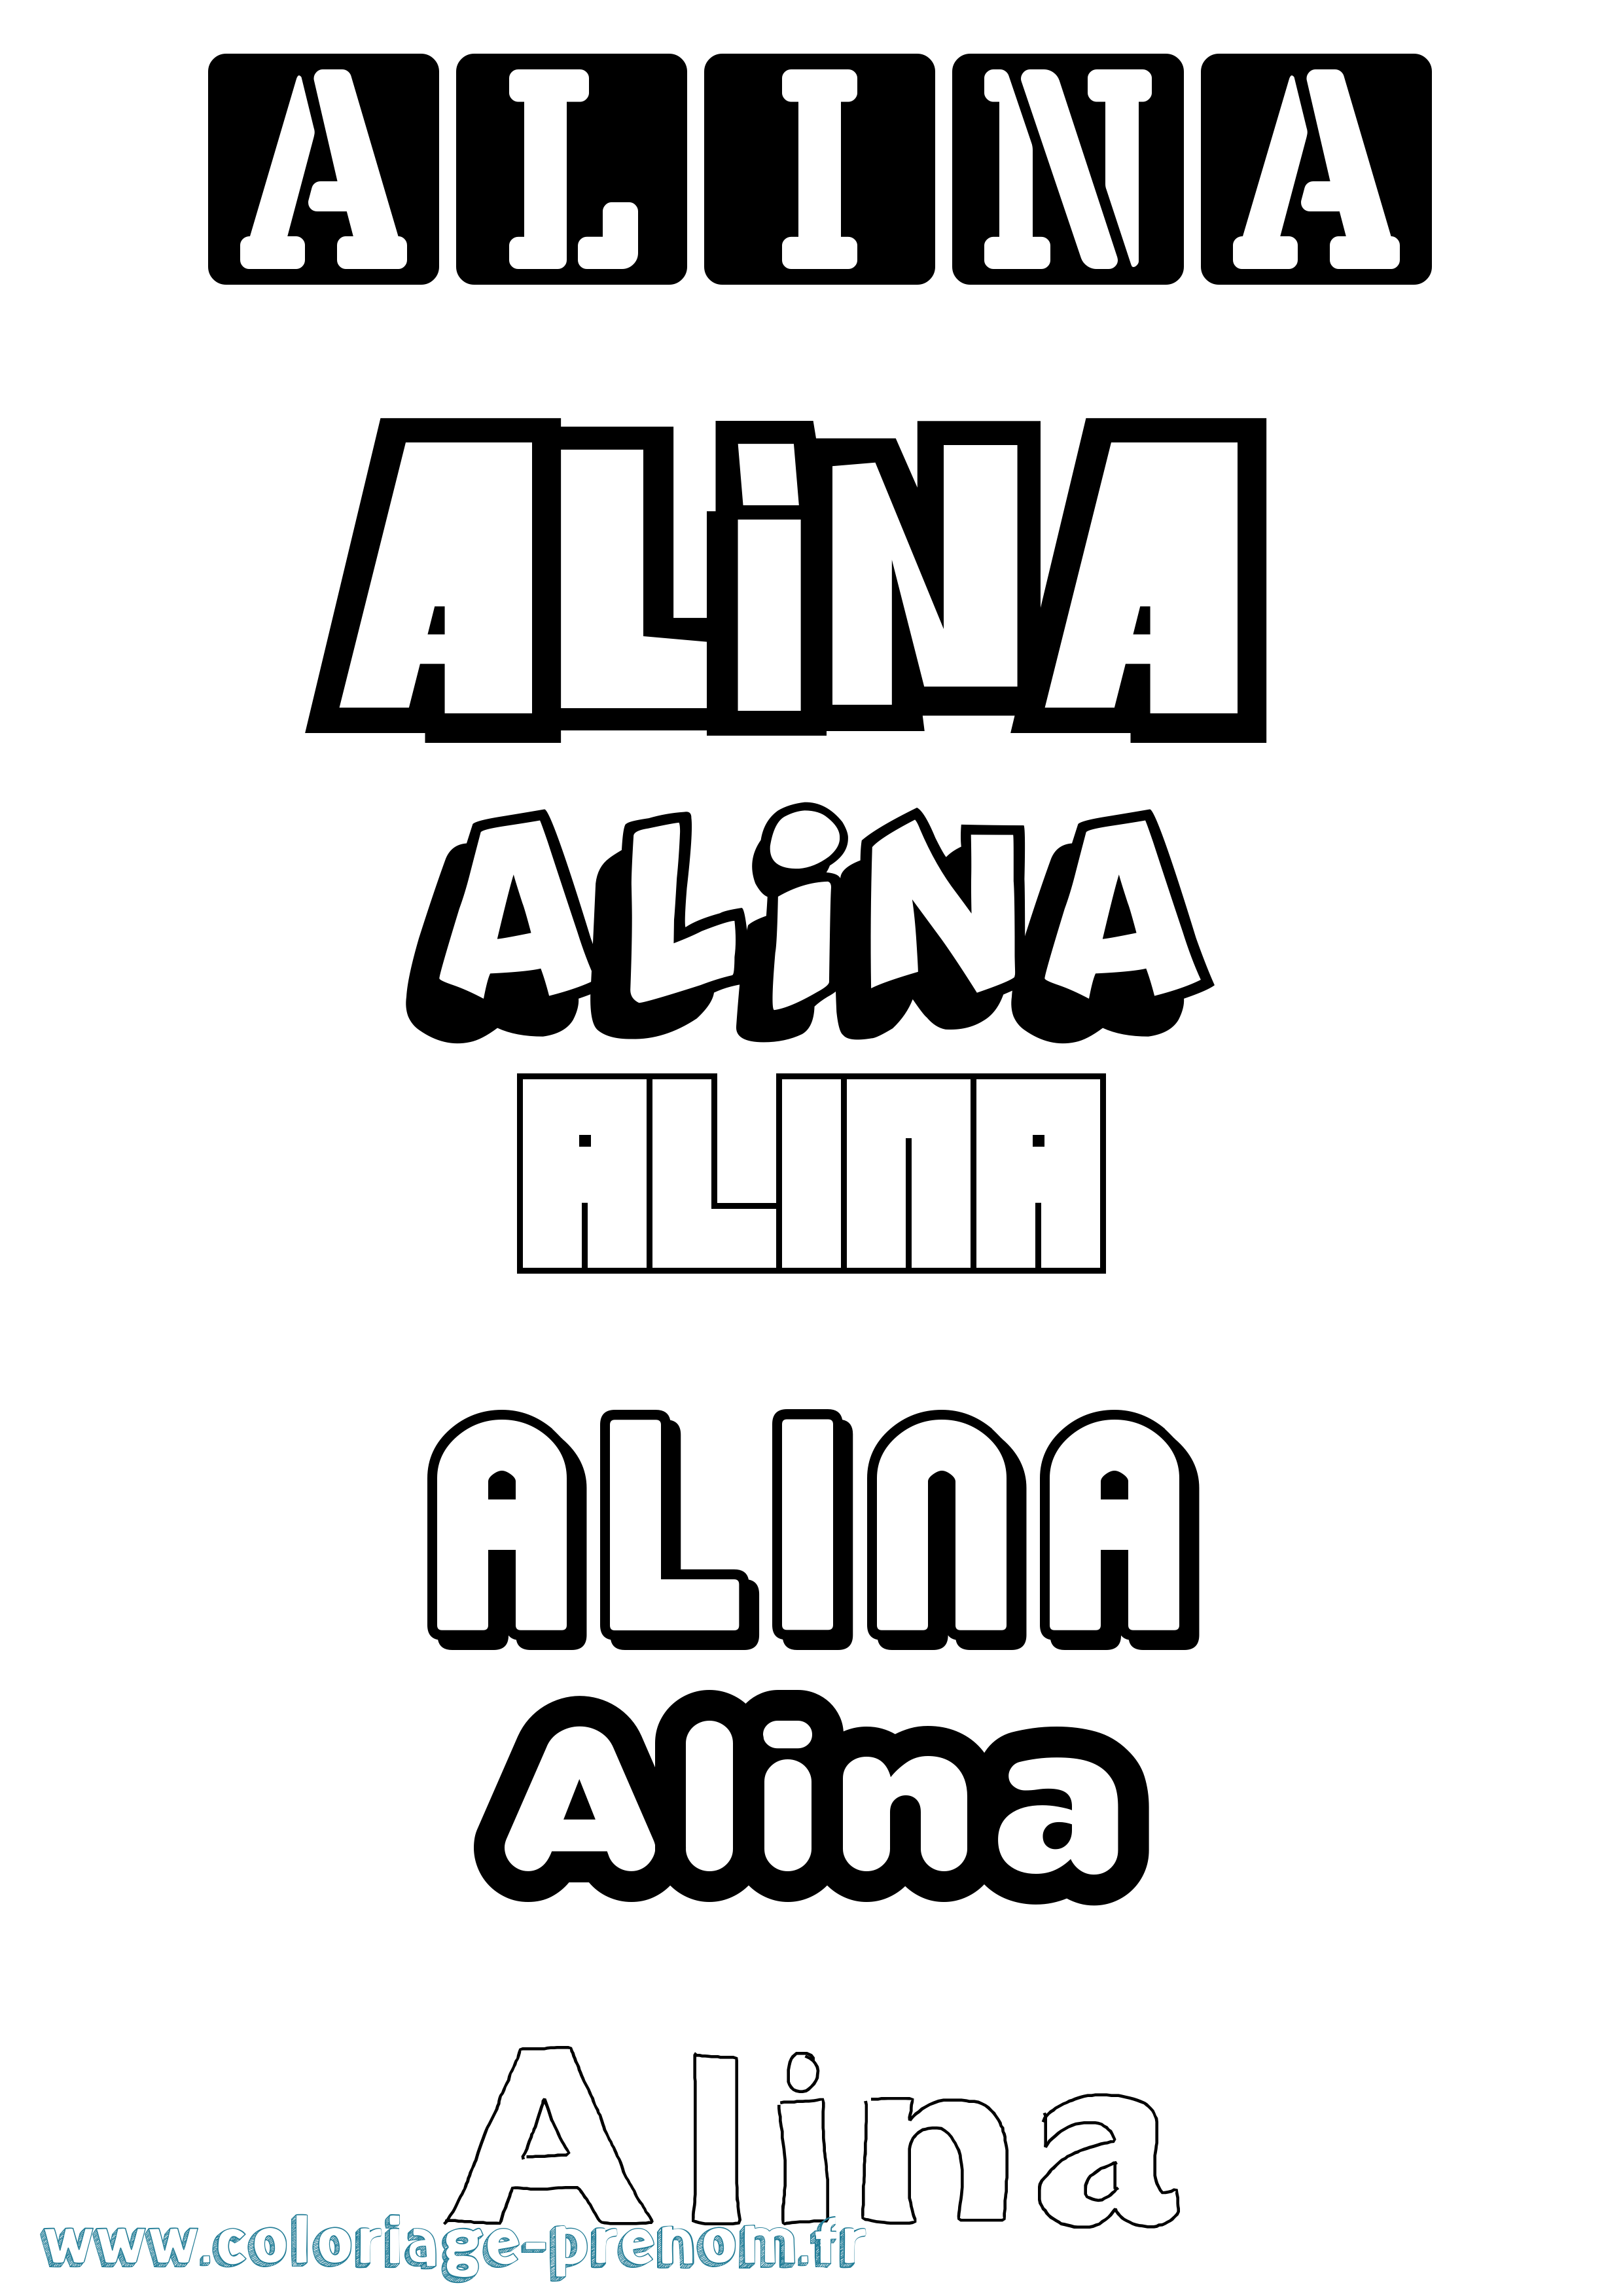 Coloriage prénom Alina